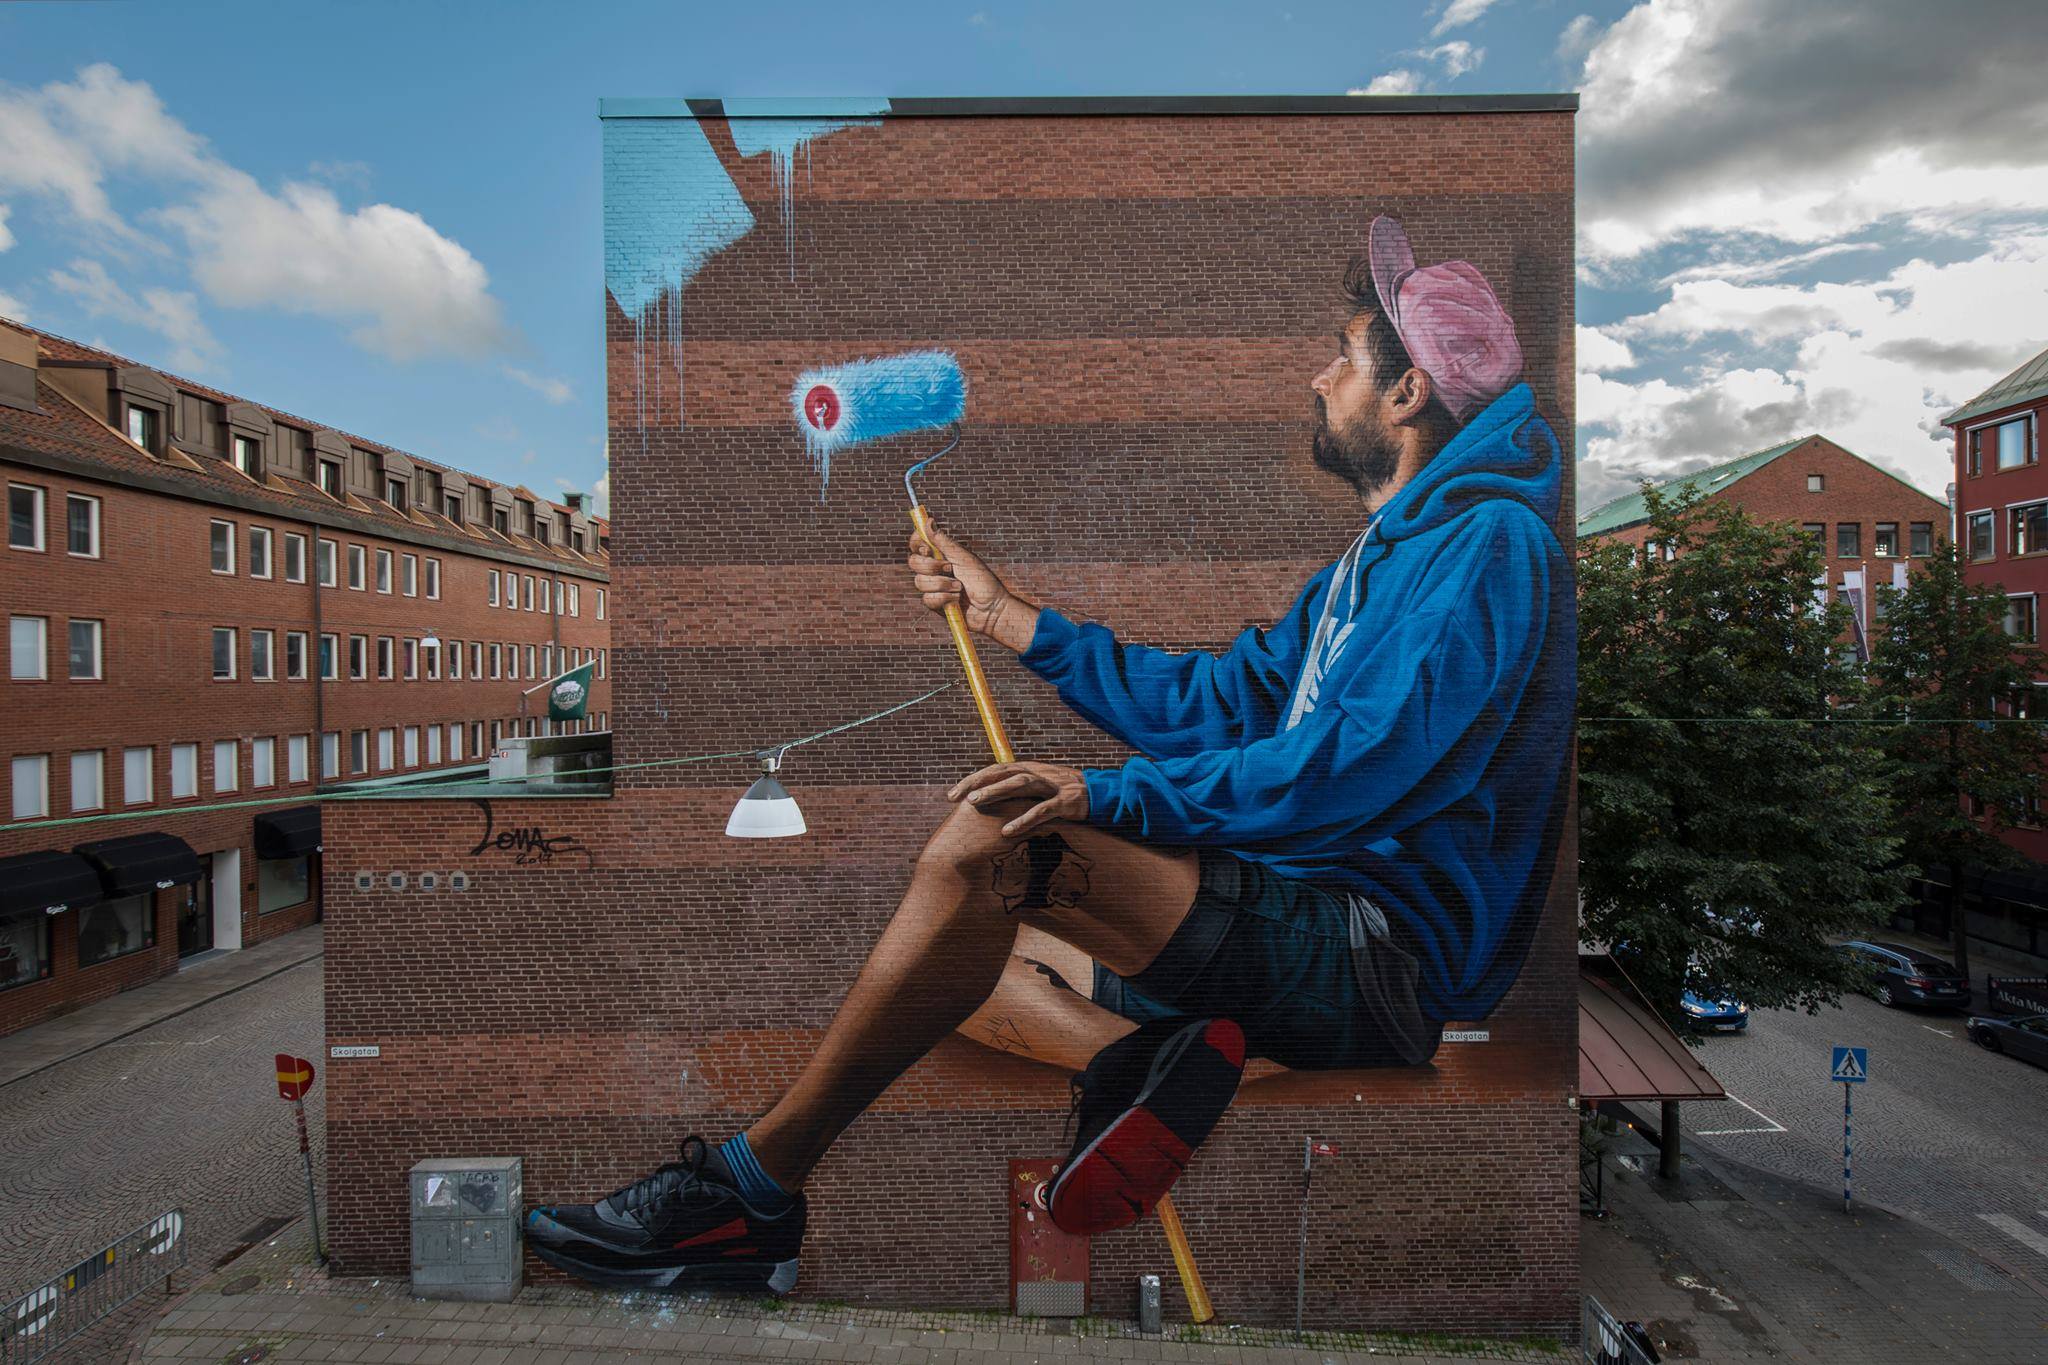 7 Best Murals of the Month: September 2017 - Street Art TodayStreet ...